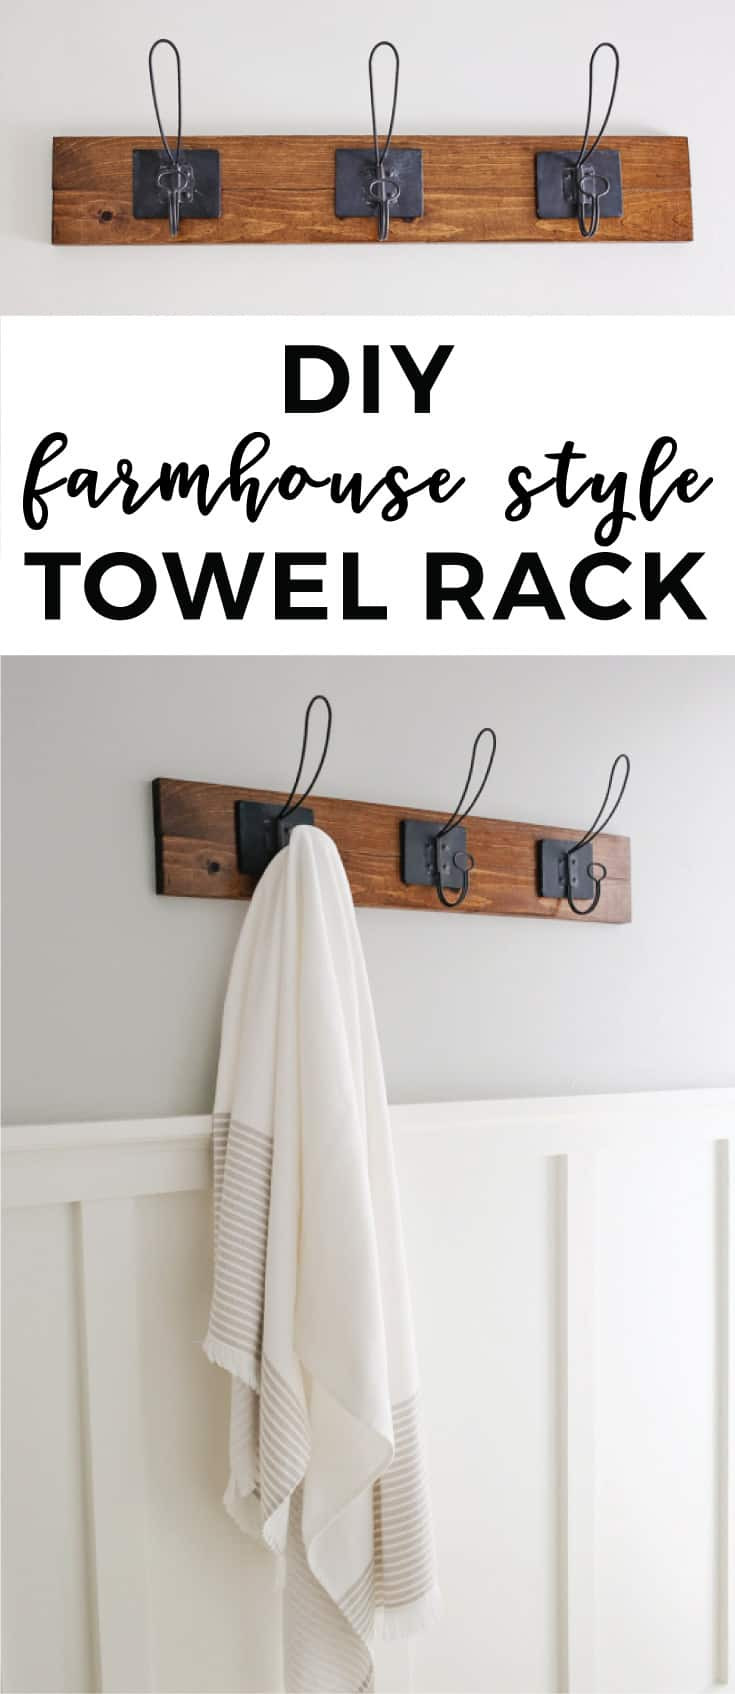 DIY Towel Racks
 Farmhouse Style DIY Towel Rack Angela Marie Made